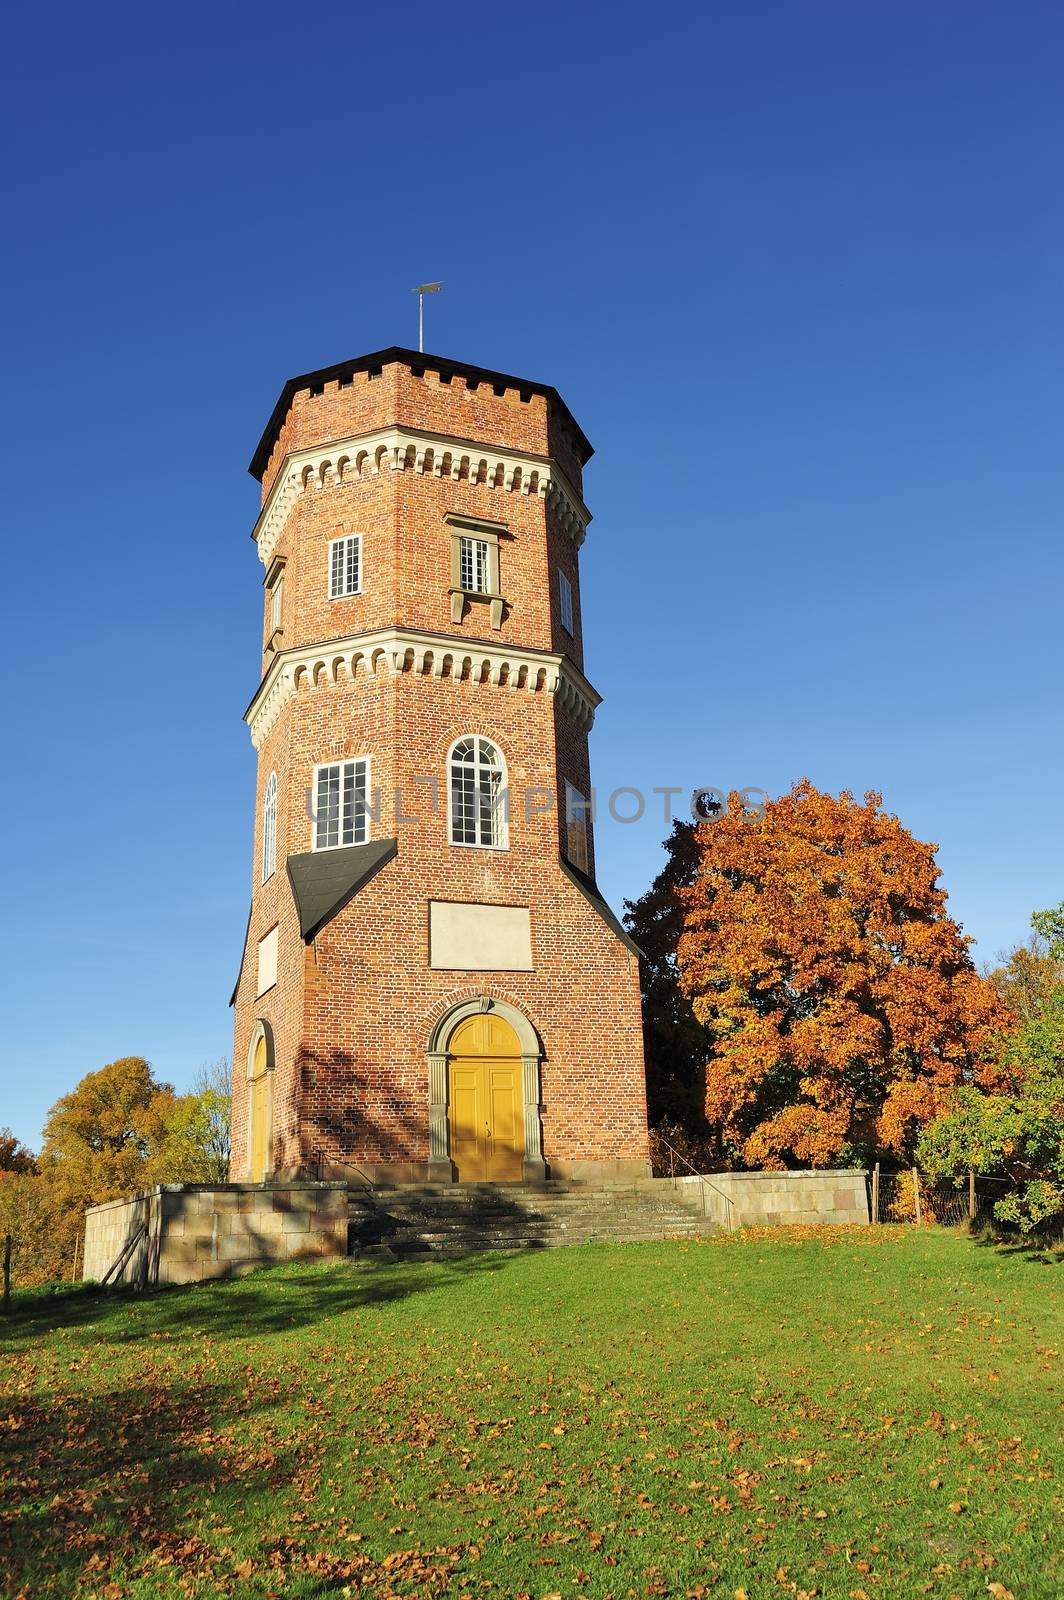 Gothic Tower in Drottningholm outside Stockholm in Sweden.